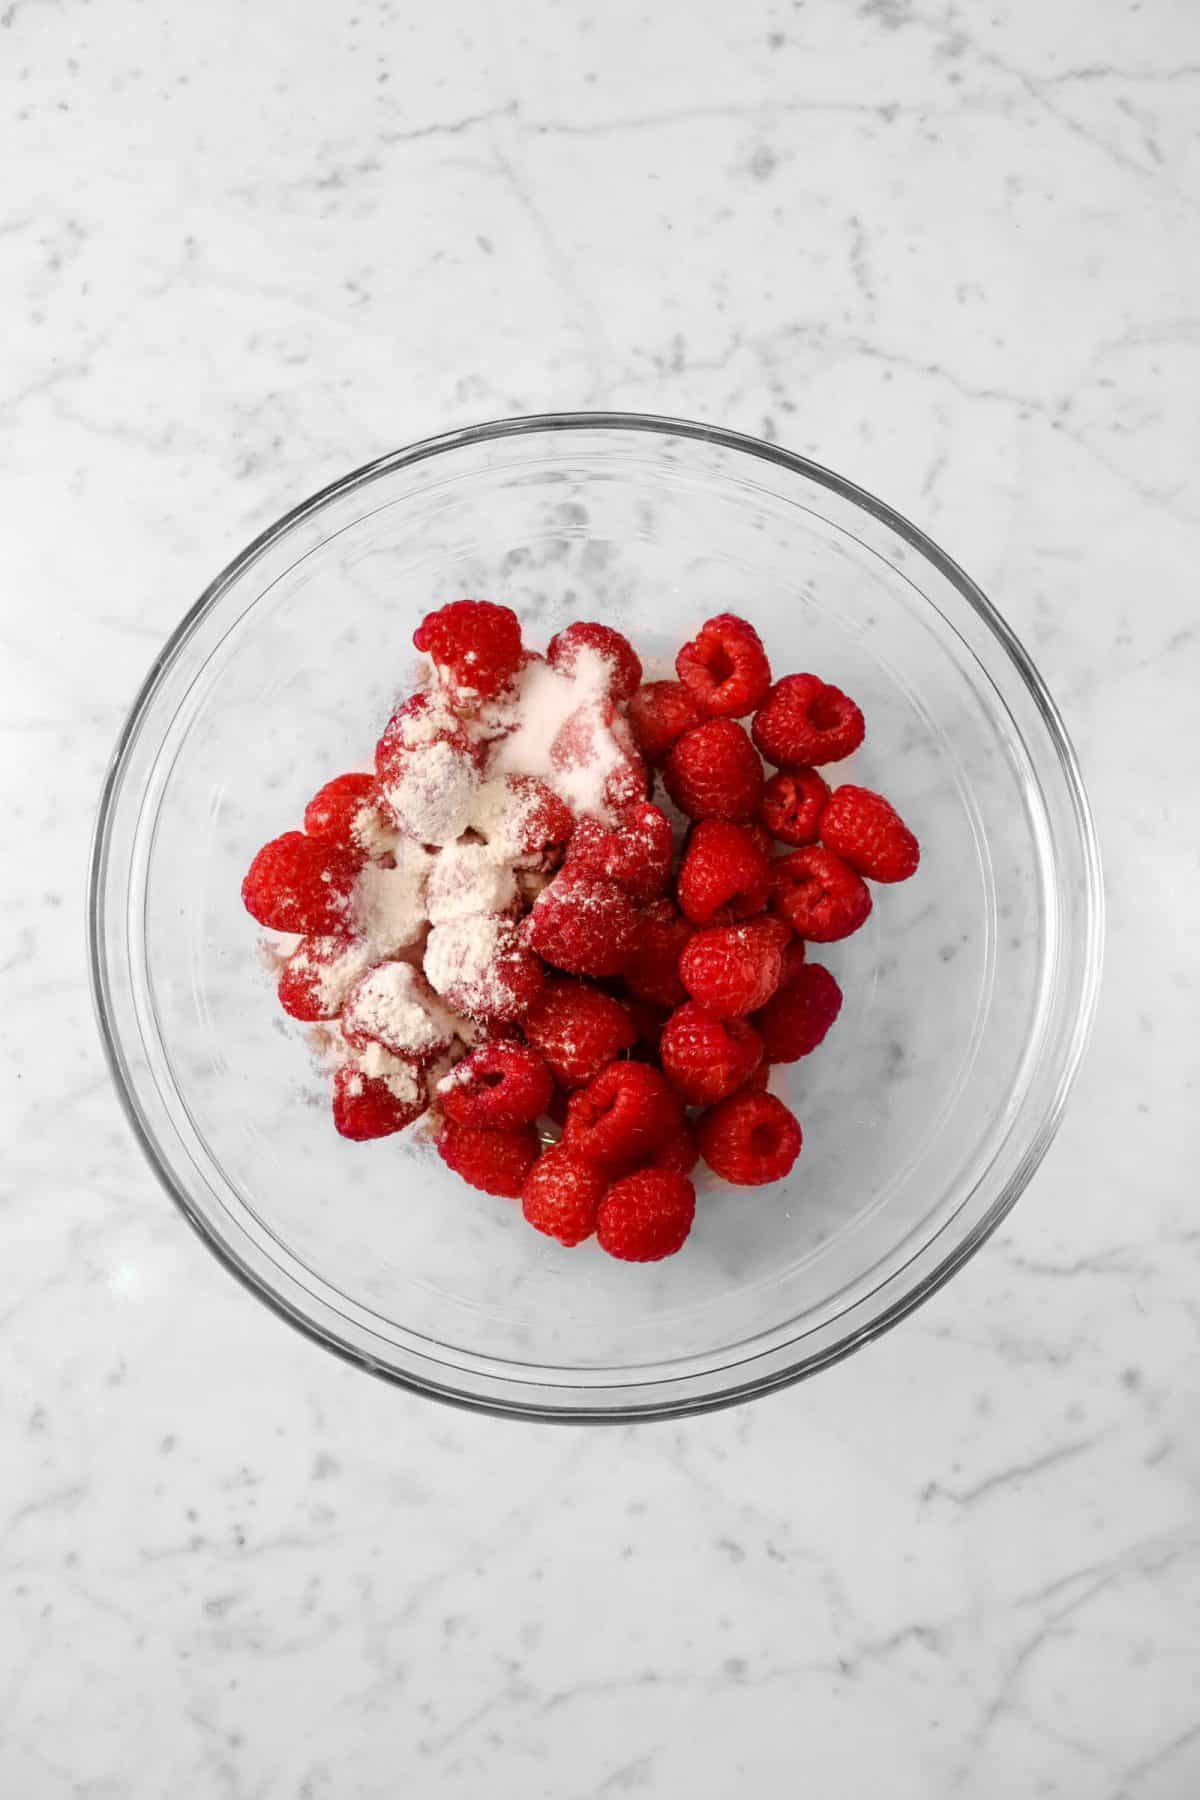 raspberries, flour, and sugar in a bowl